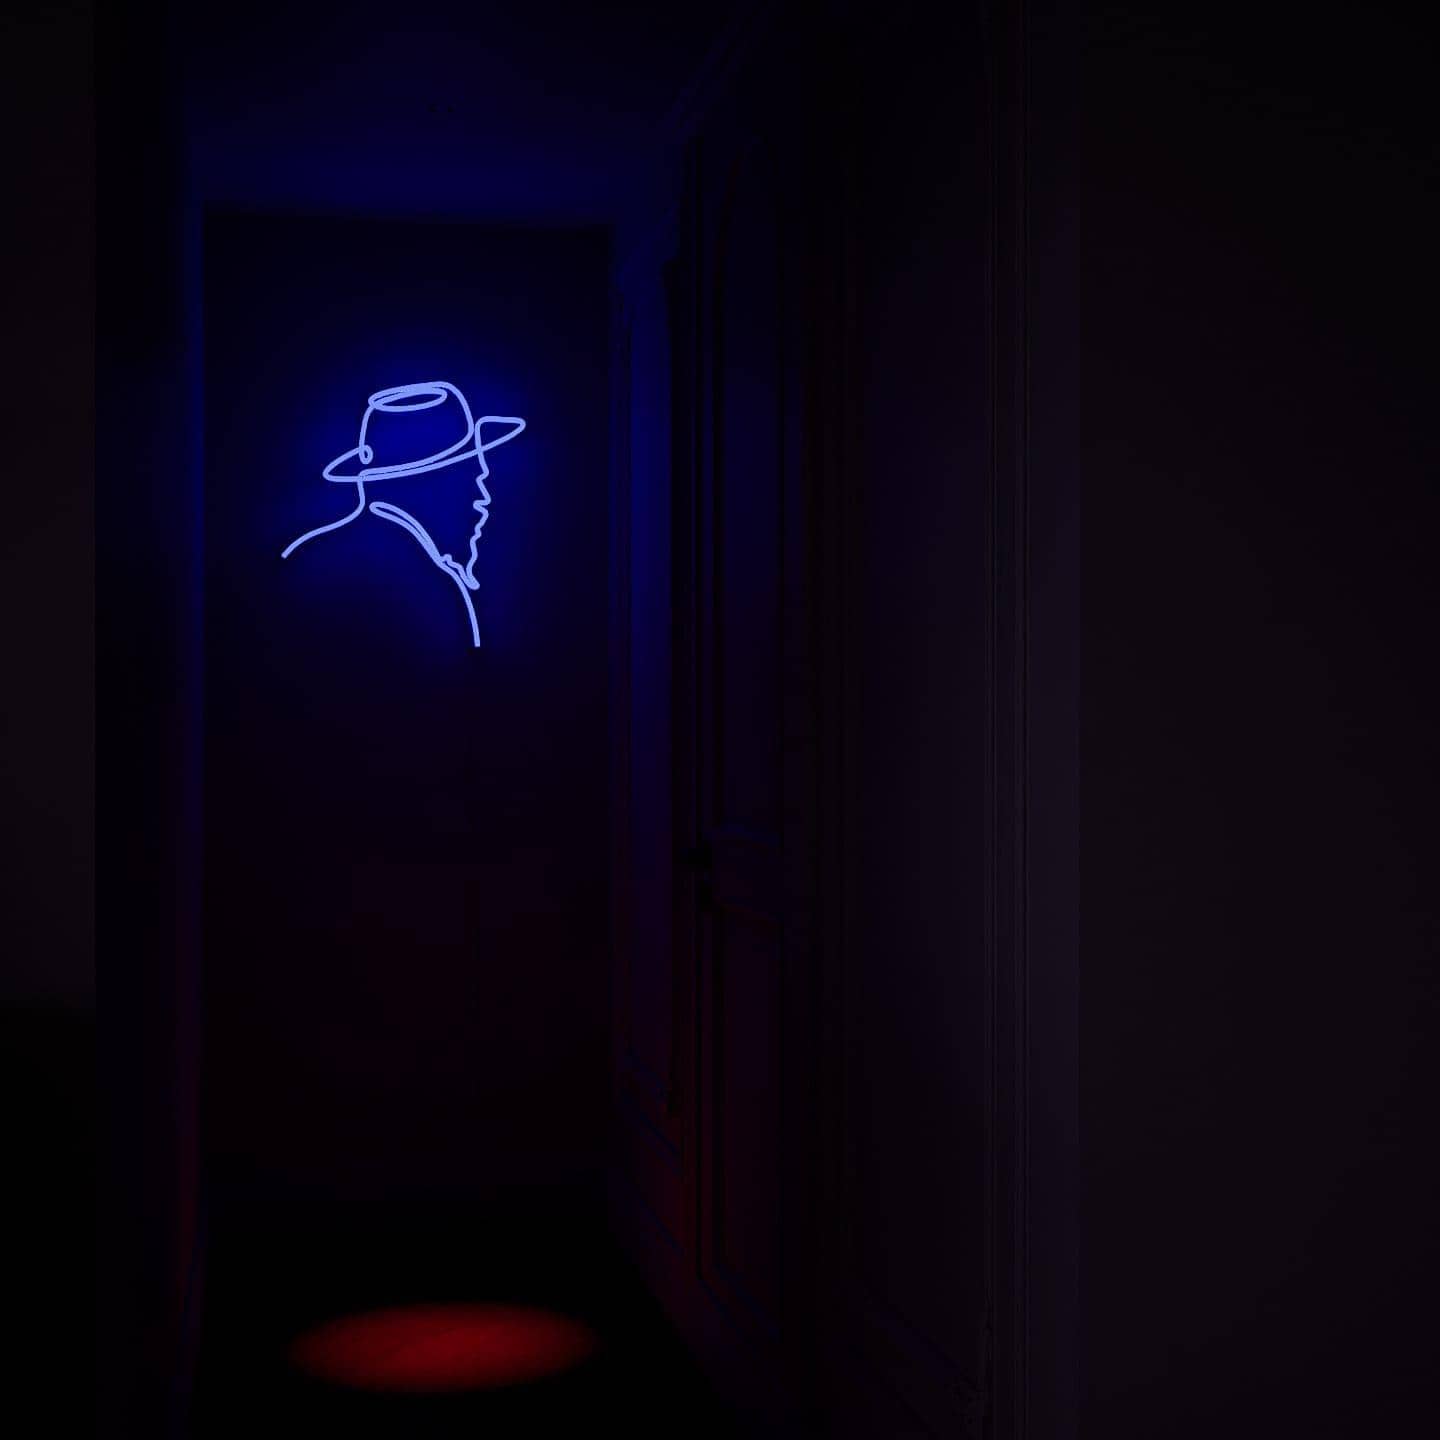 custom-neon-sign-modernism-artist-series-Pcass-oday-DodgerBlue